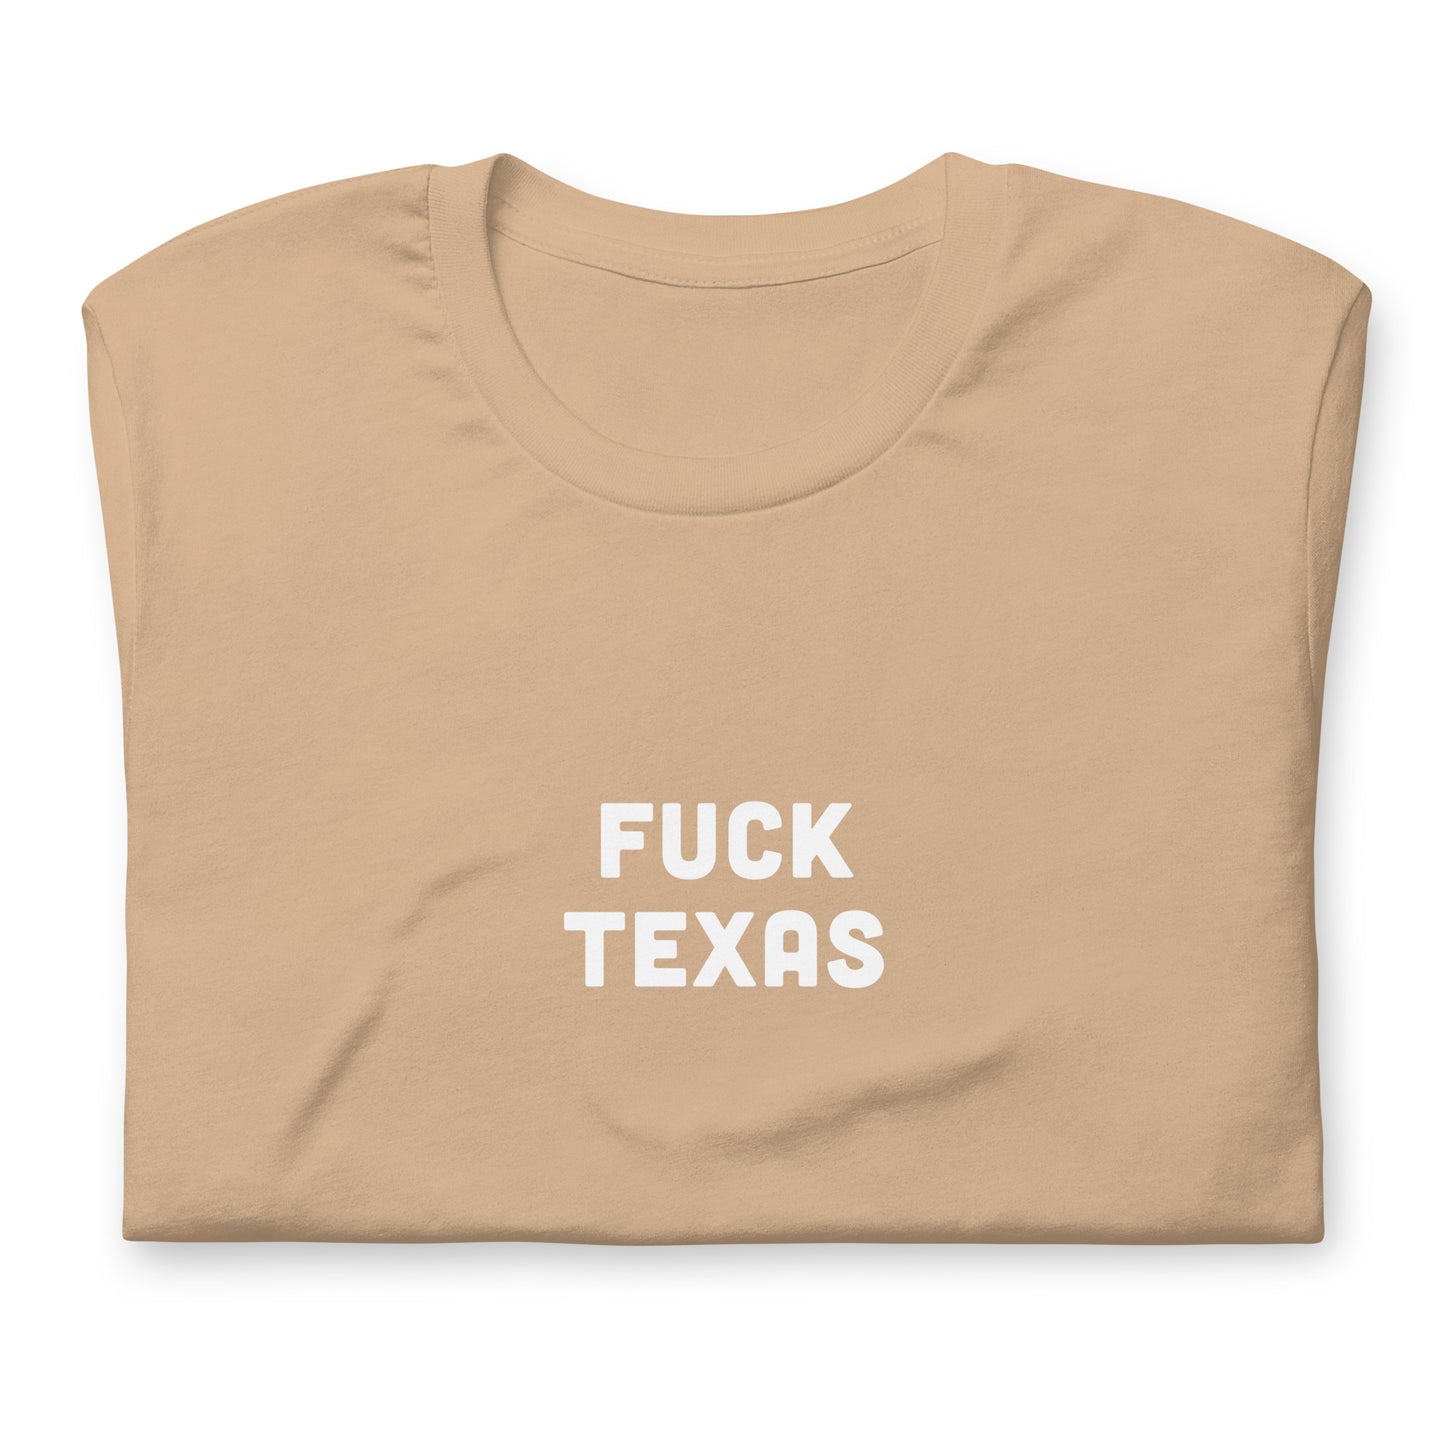 Fuck Texas T-Shirt Size M Color Asphalt